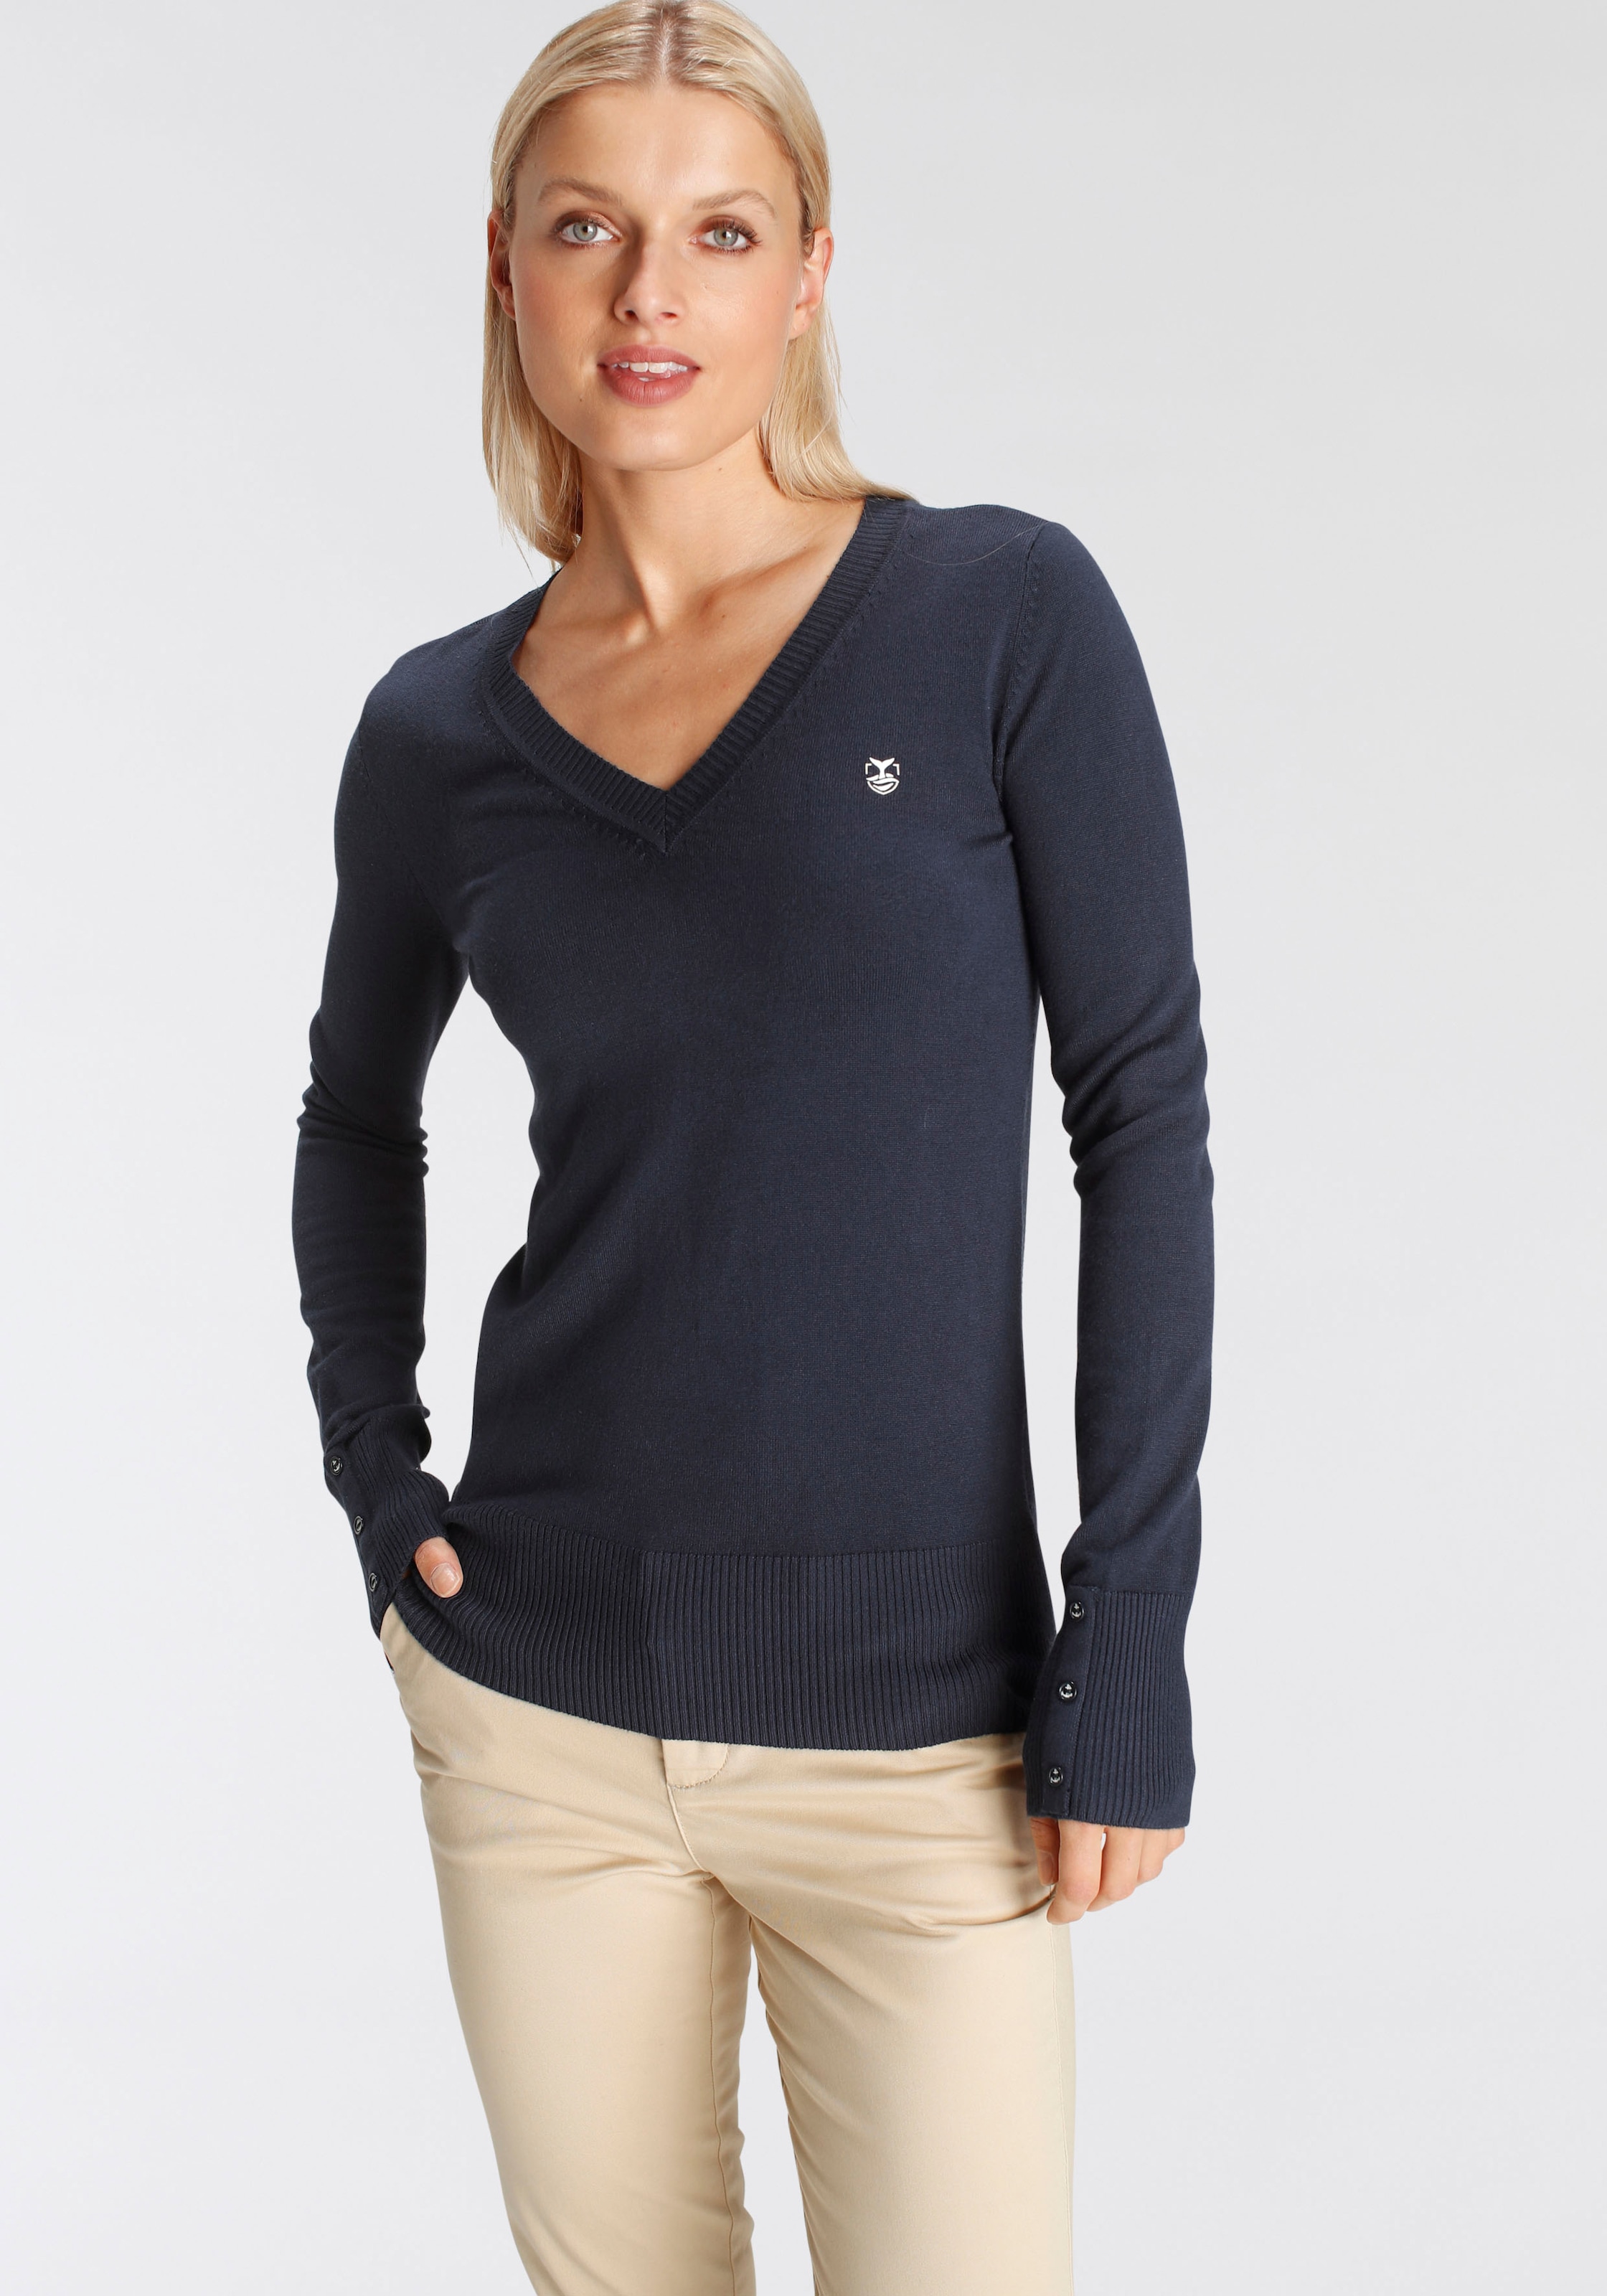 DELMAO V-Ausschnitt-Pullover, mit kleinem Logodruck OTTO der MARKE! kaufen auf bei Brust - NEUE